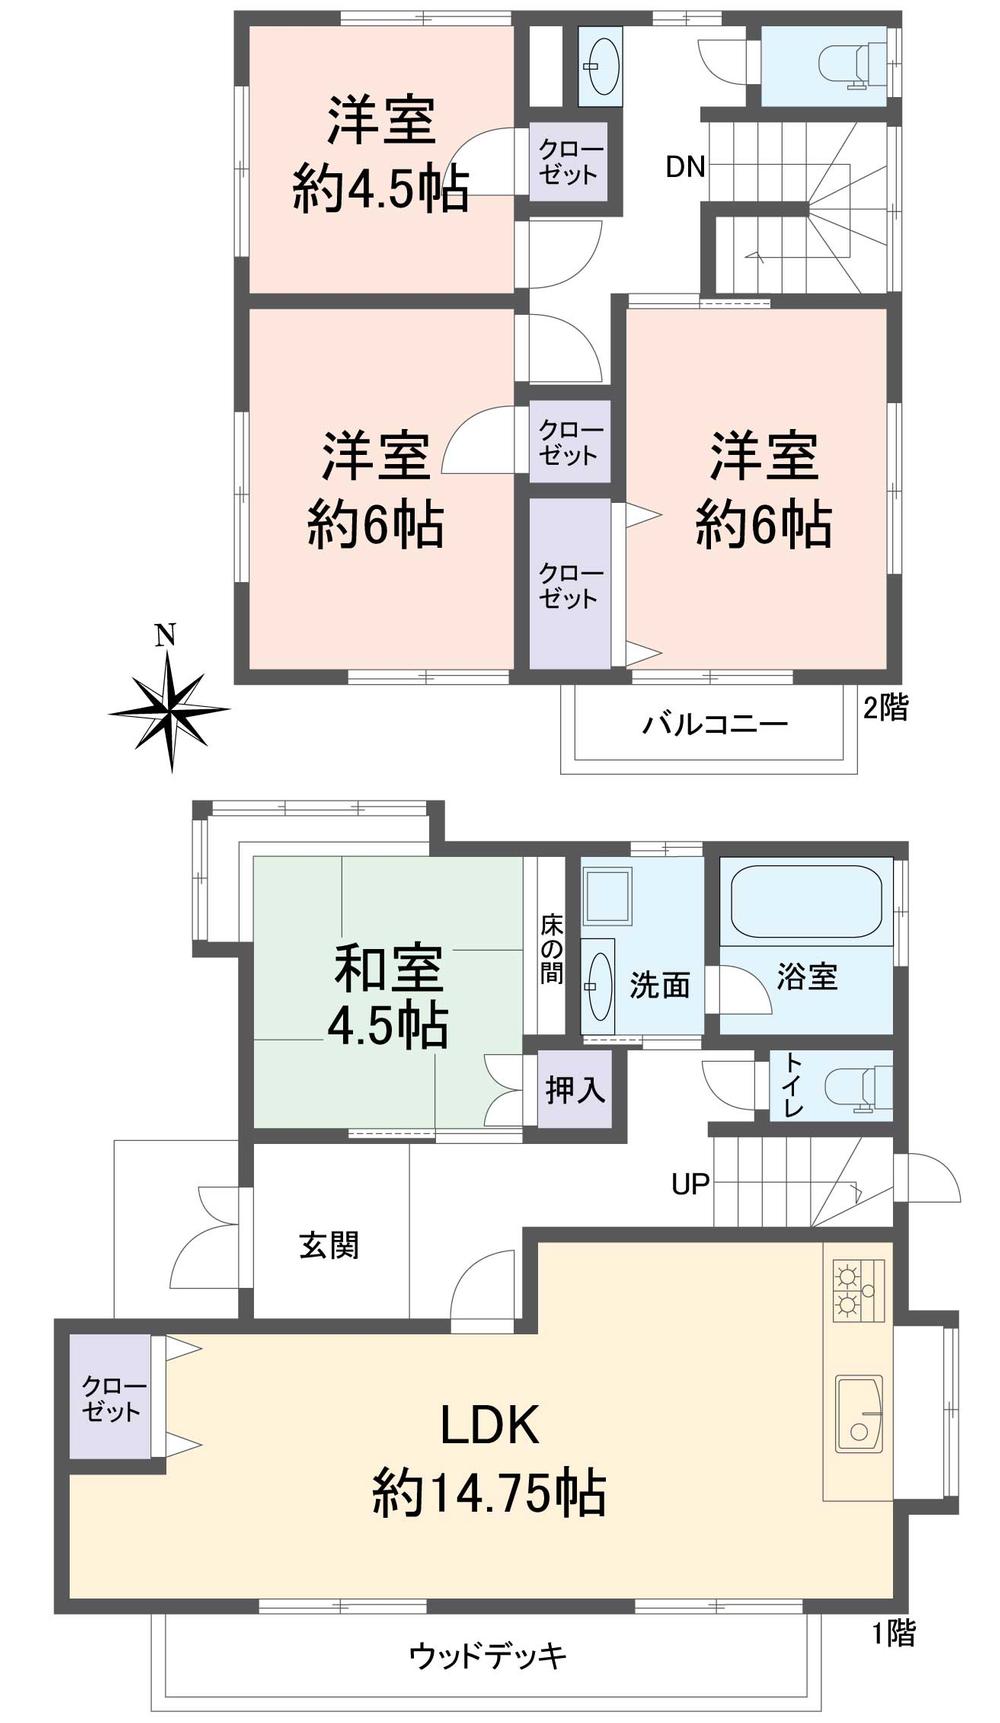 Floor plan. 16.8 million yen, 4LDK, Land area 146.18 sq m , Building area 105.98 sq m